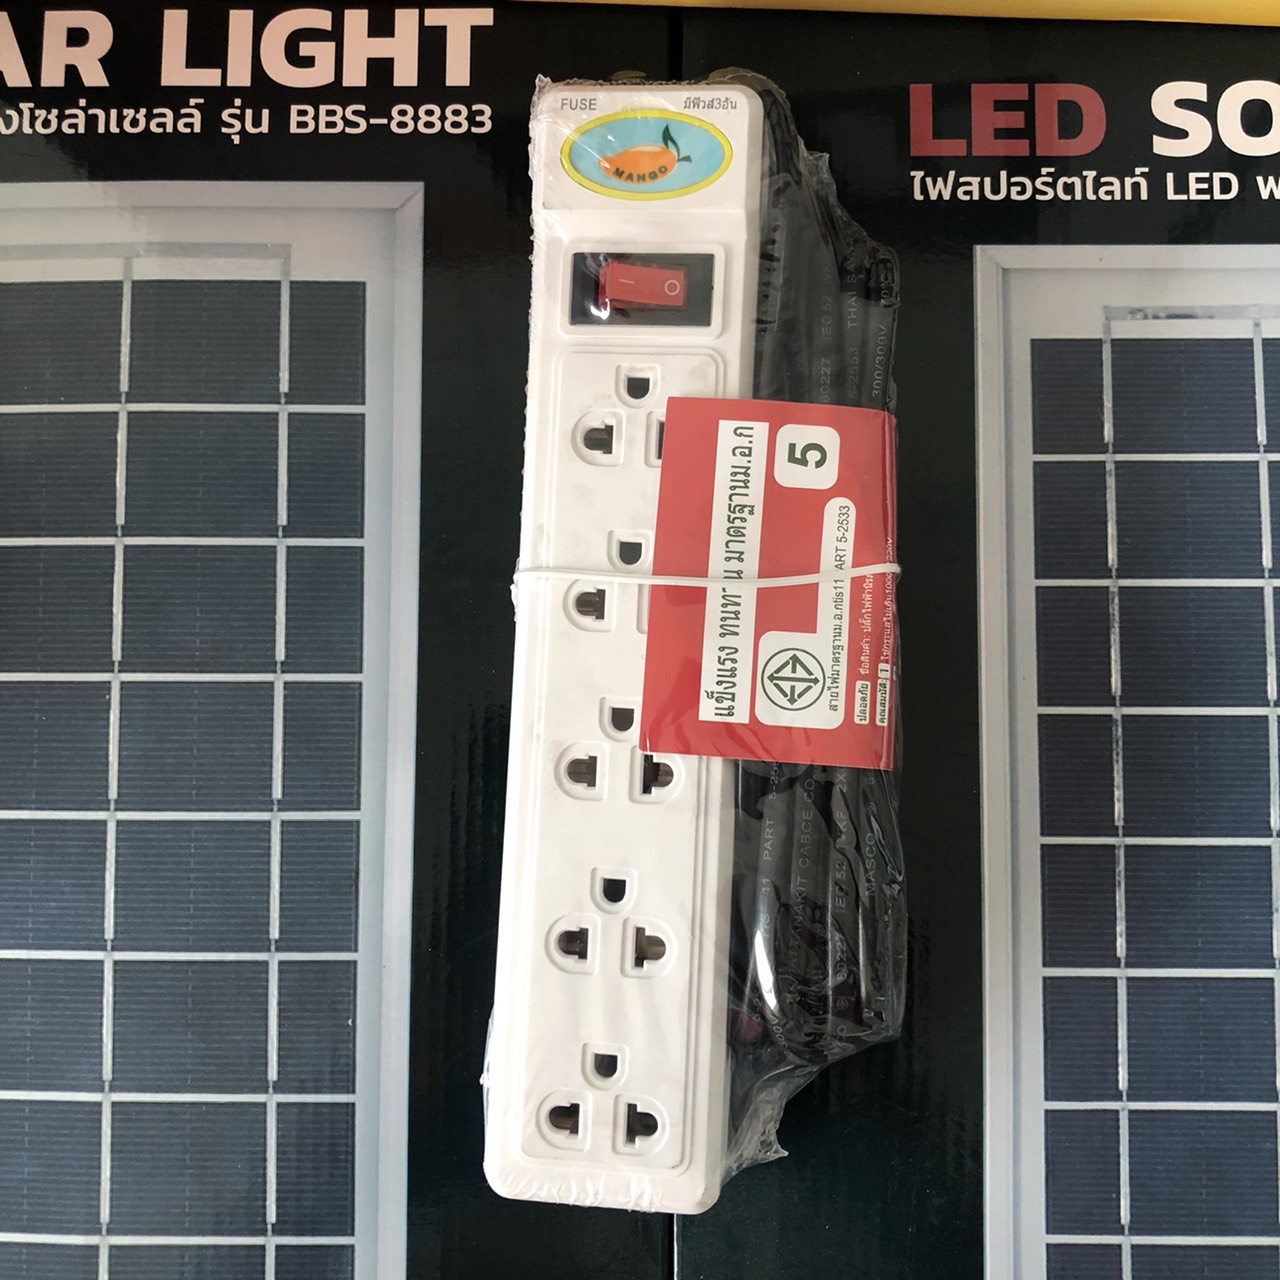 LED ปลั๊กไฟ 5ช่อง 1สวิตซ์ สามารถใช้กับเครื่องใช้ไฟฟ้าทั่วไป ปลั๊กไฟ 3ช่อง 1สวิตซ์ สามารถใช้กับเครื่องใช้ไฟฟ้าทั่วไป